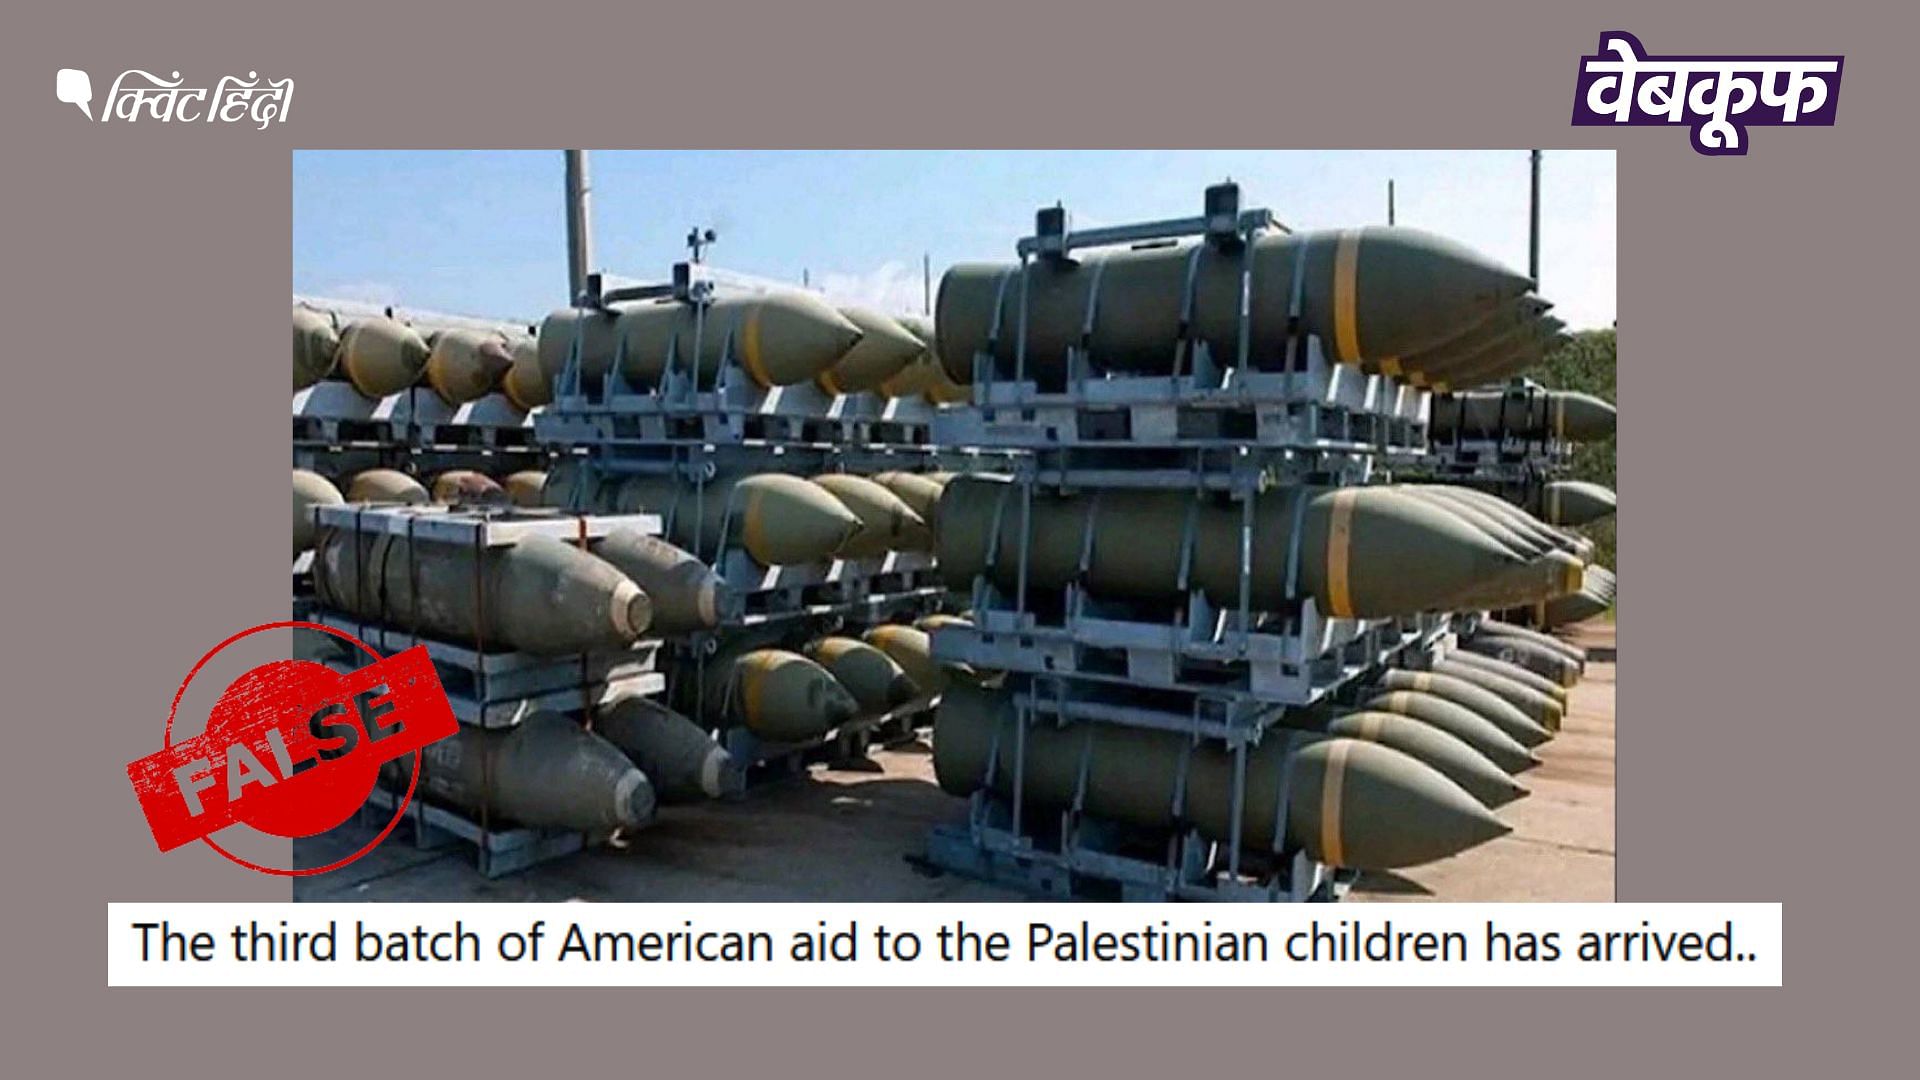 <div class="paragraphs"><p>इस फोटो का इजरायल-हमास युद्ध से कोई संबंध नहीं है.</p></div>